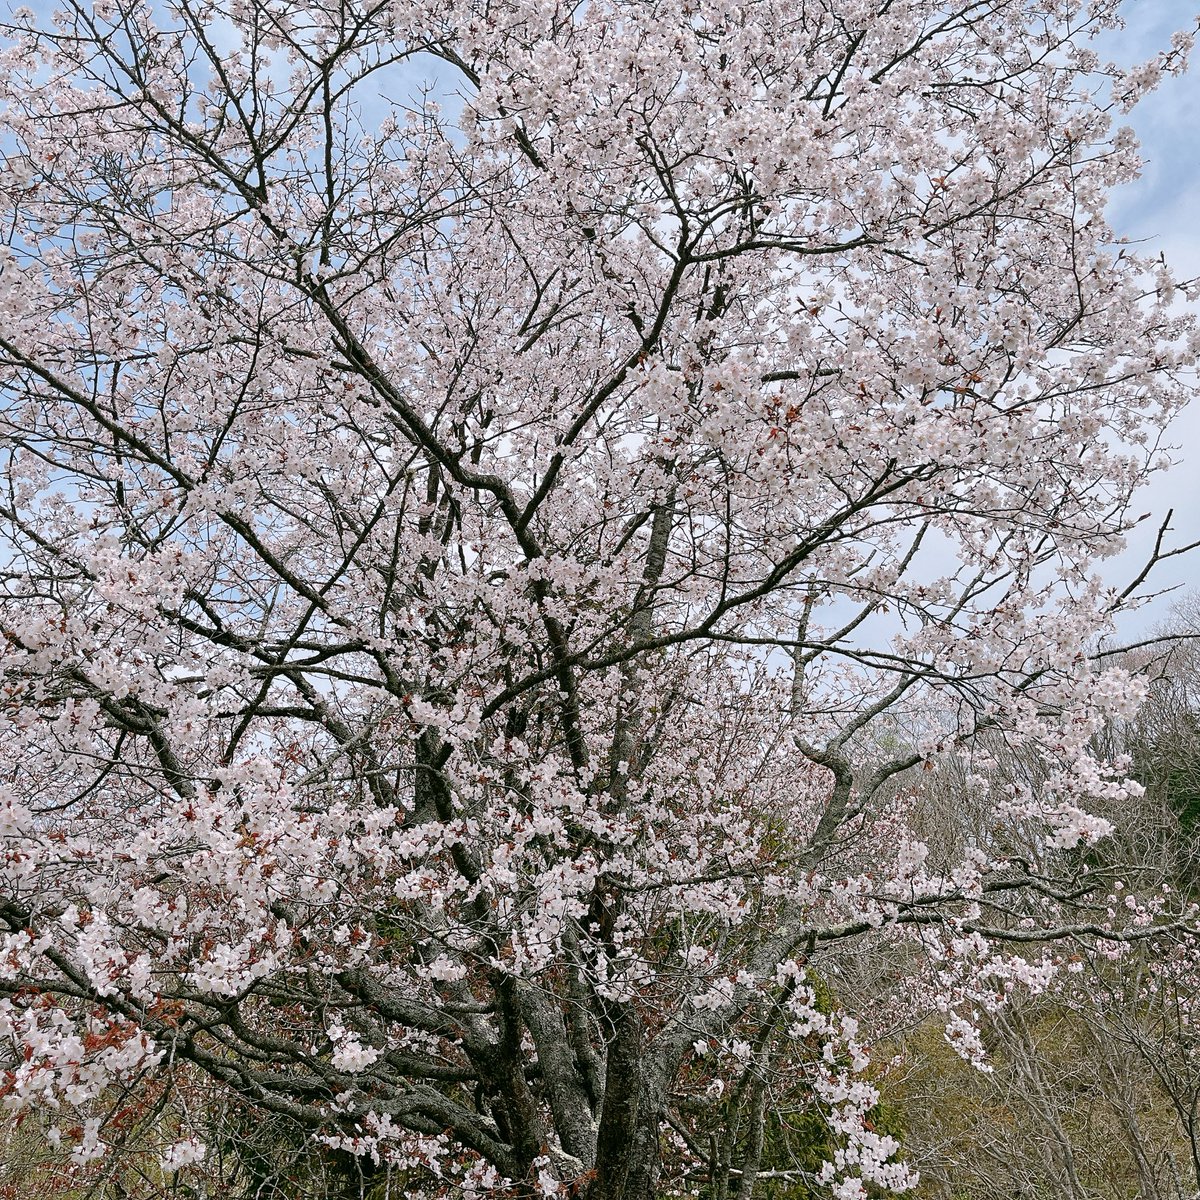 全国のお母さんに日本一開花の遅い桜🌸
お届けします😁